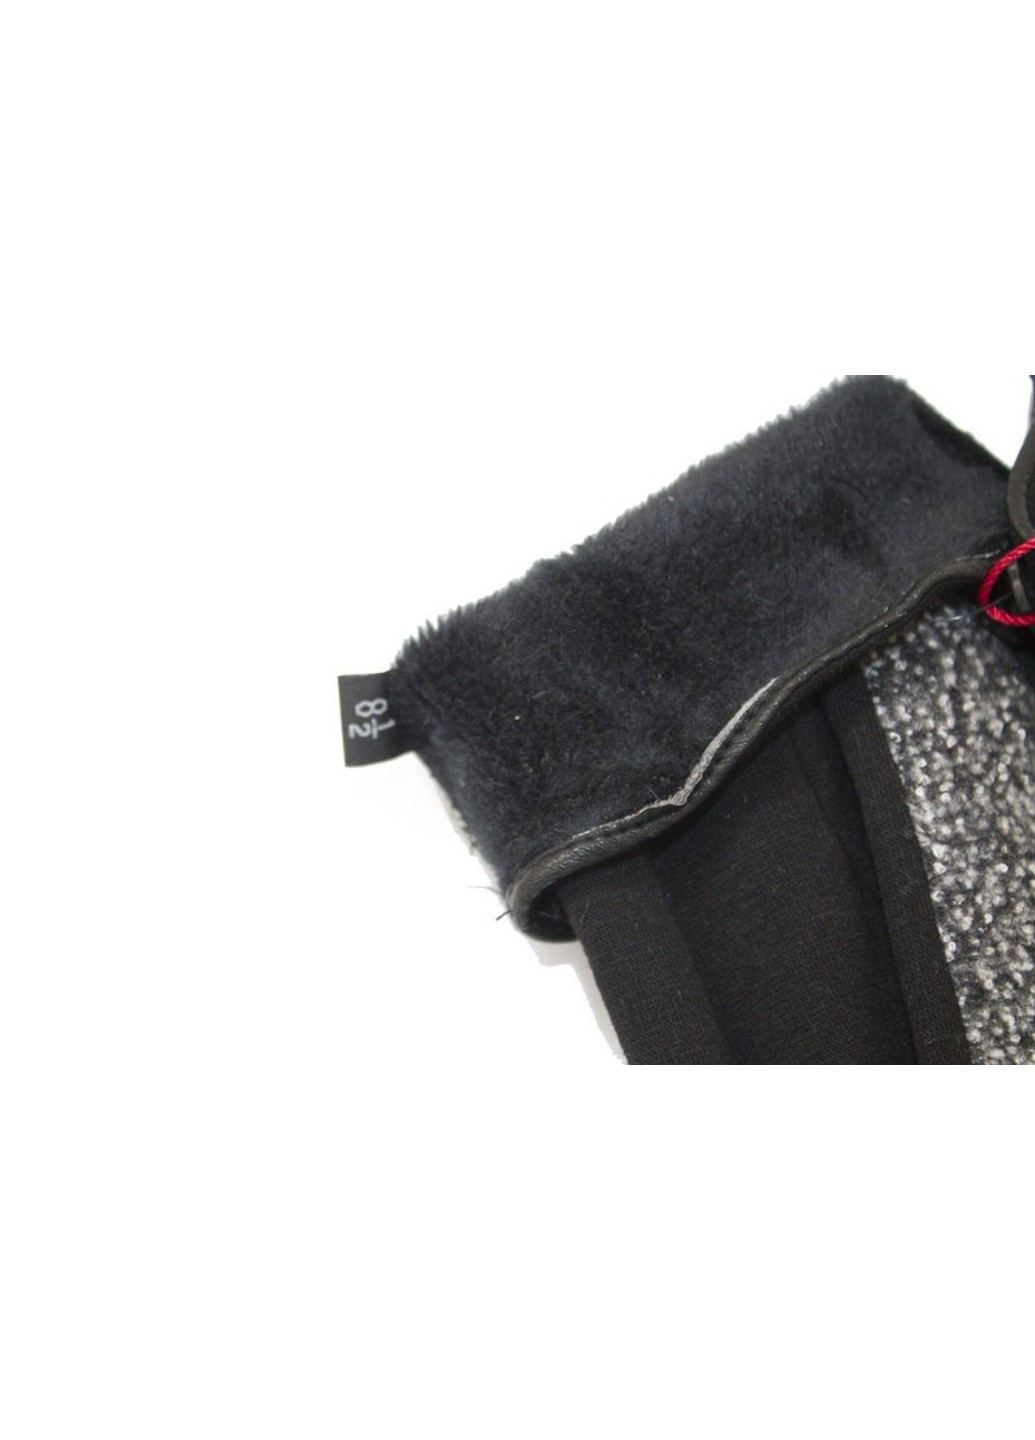 Комбинированные стрейчевые женские перчатки M Shust Gloves (261853567)